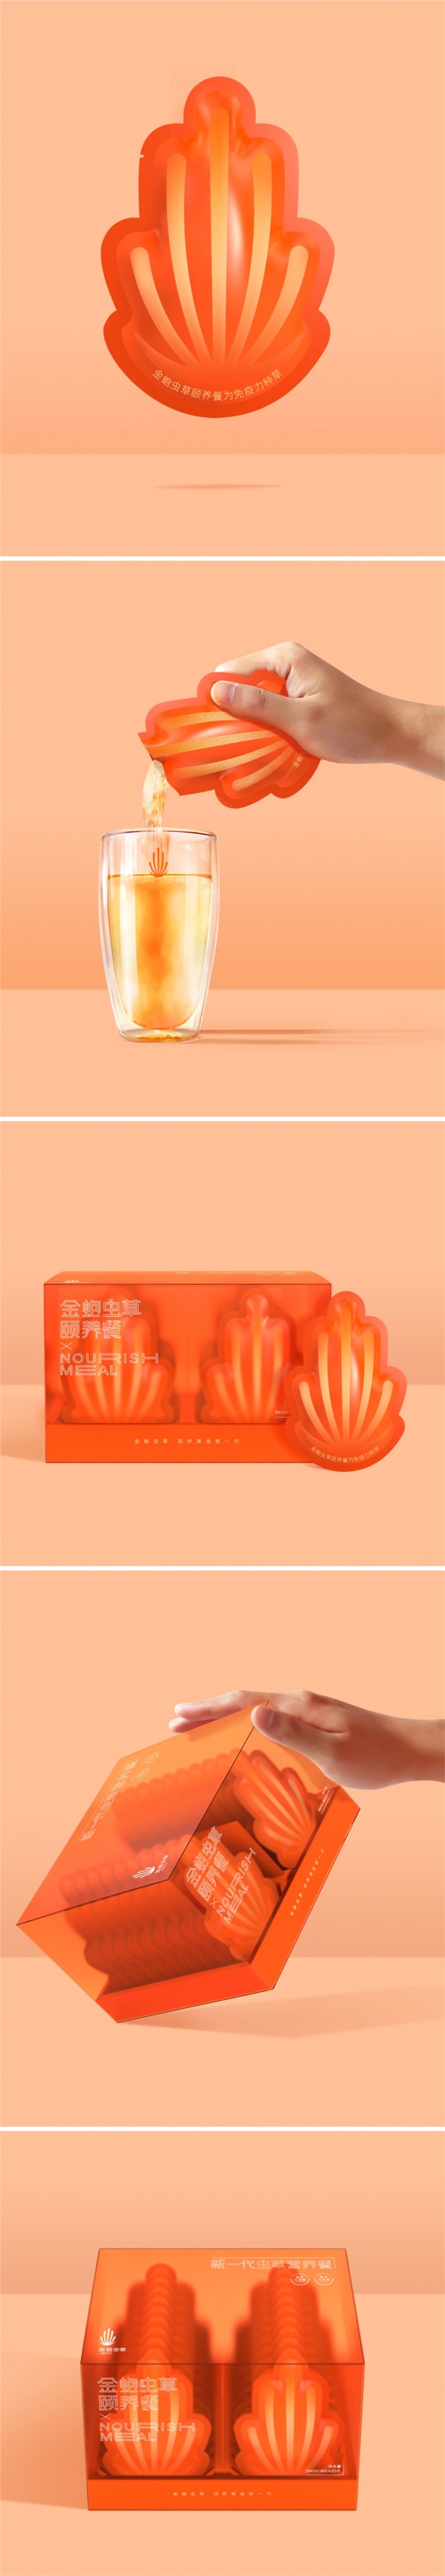 金蚫虫草保健食品包装设计_深圳品牌设计公司案例